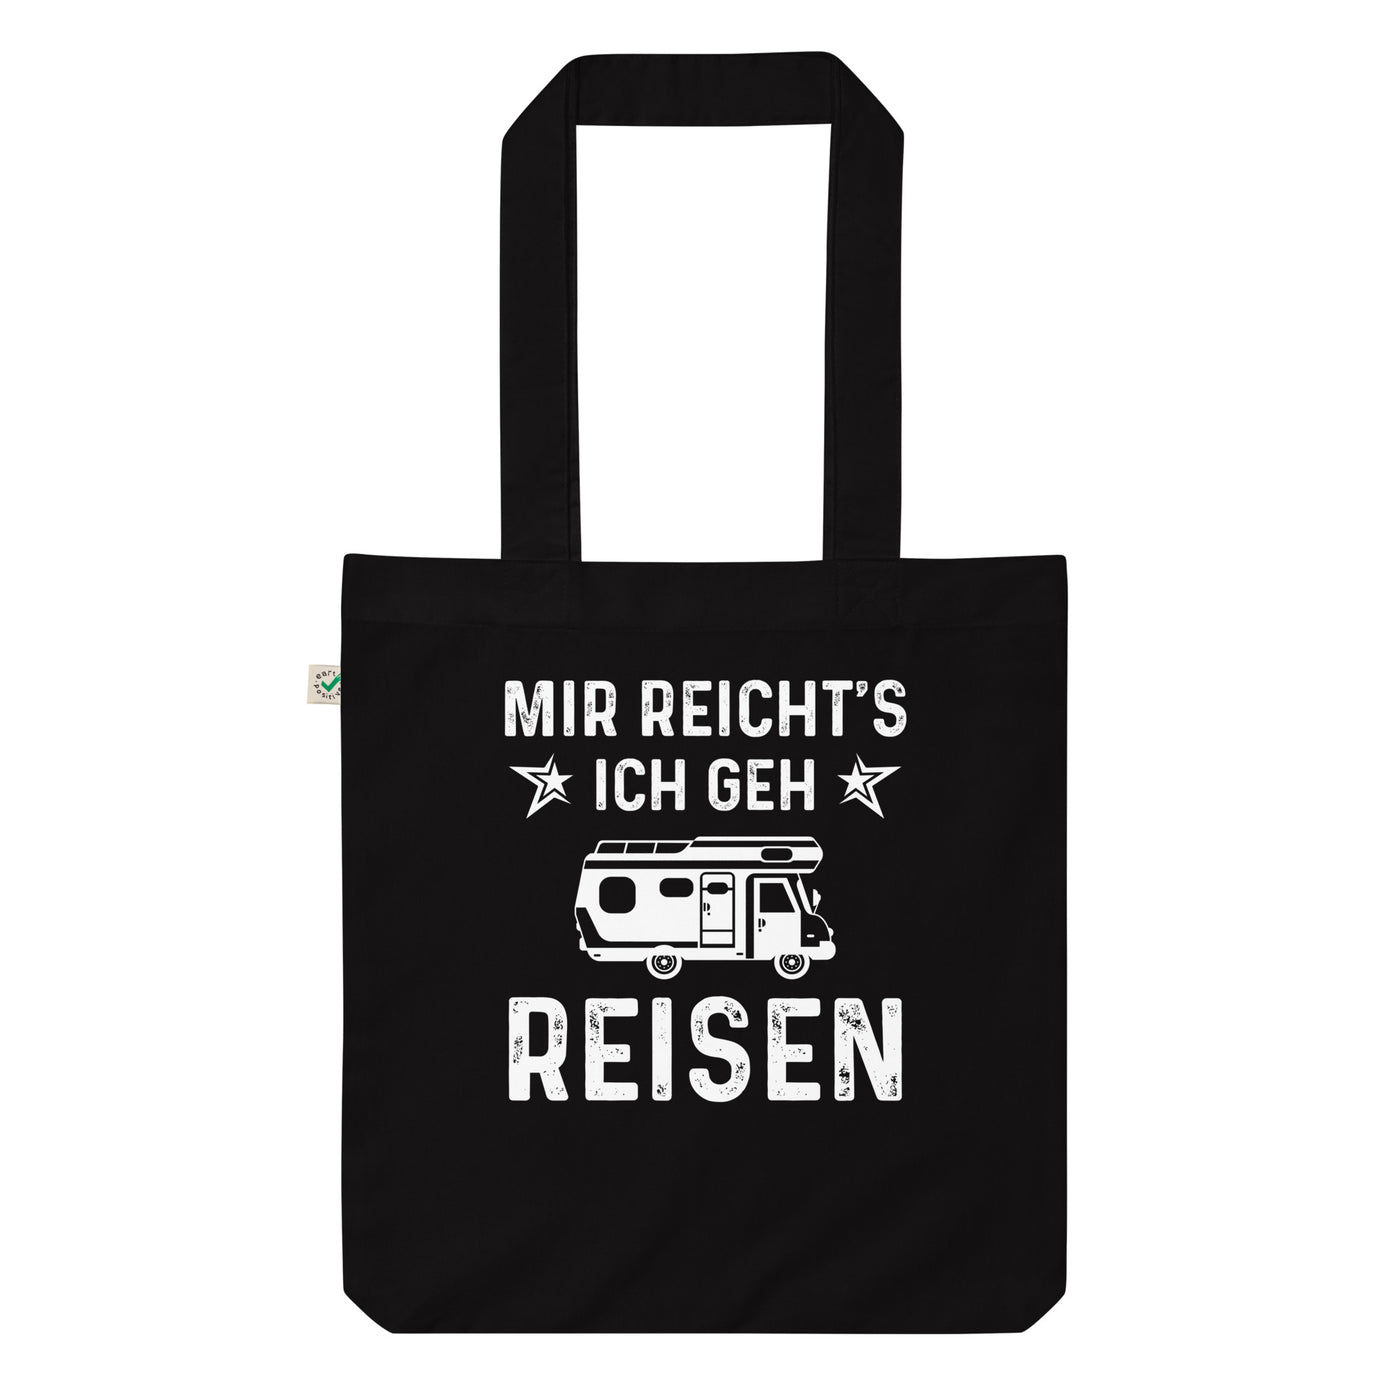 Mir Reicht'S Ich Gen Reisen - Organic Einkaufstasche camping Black